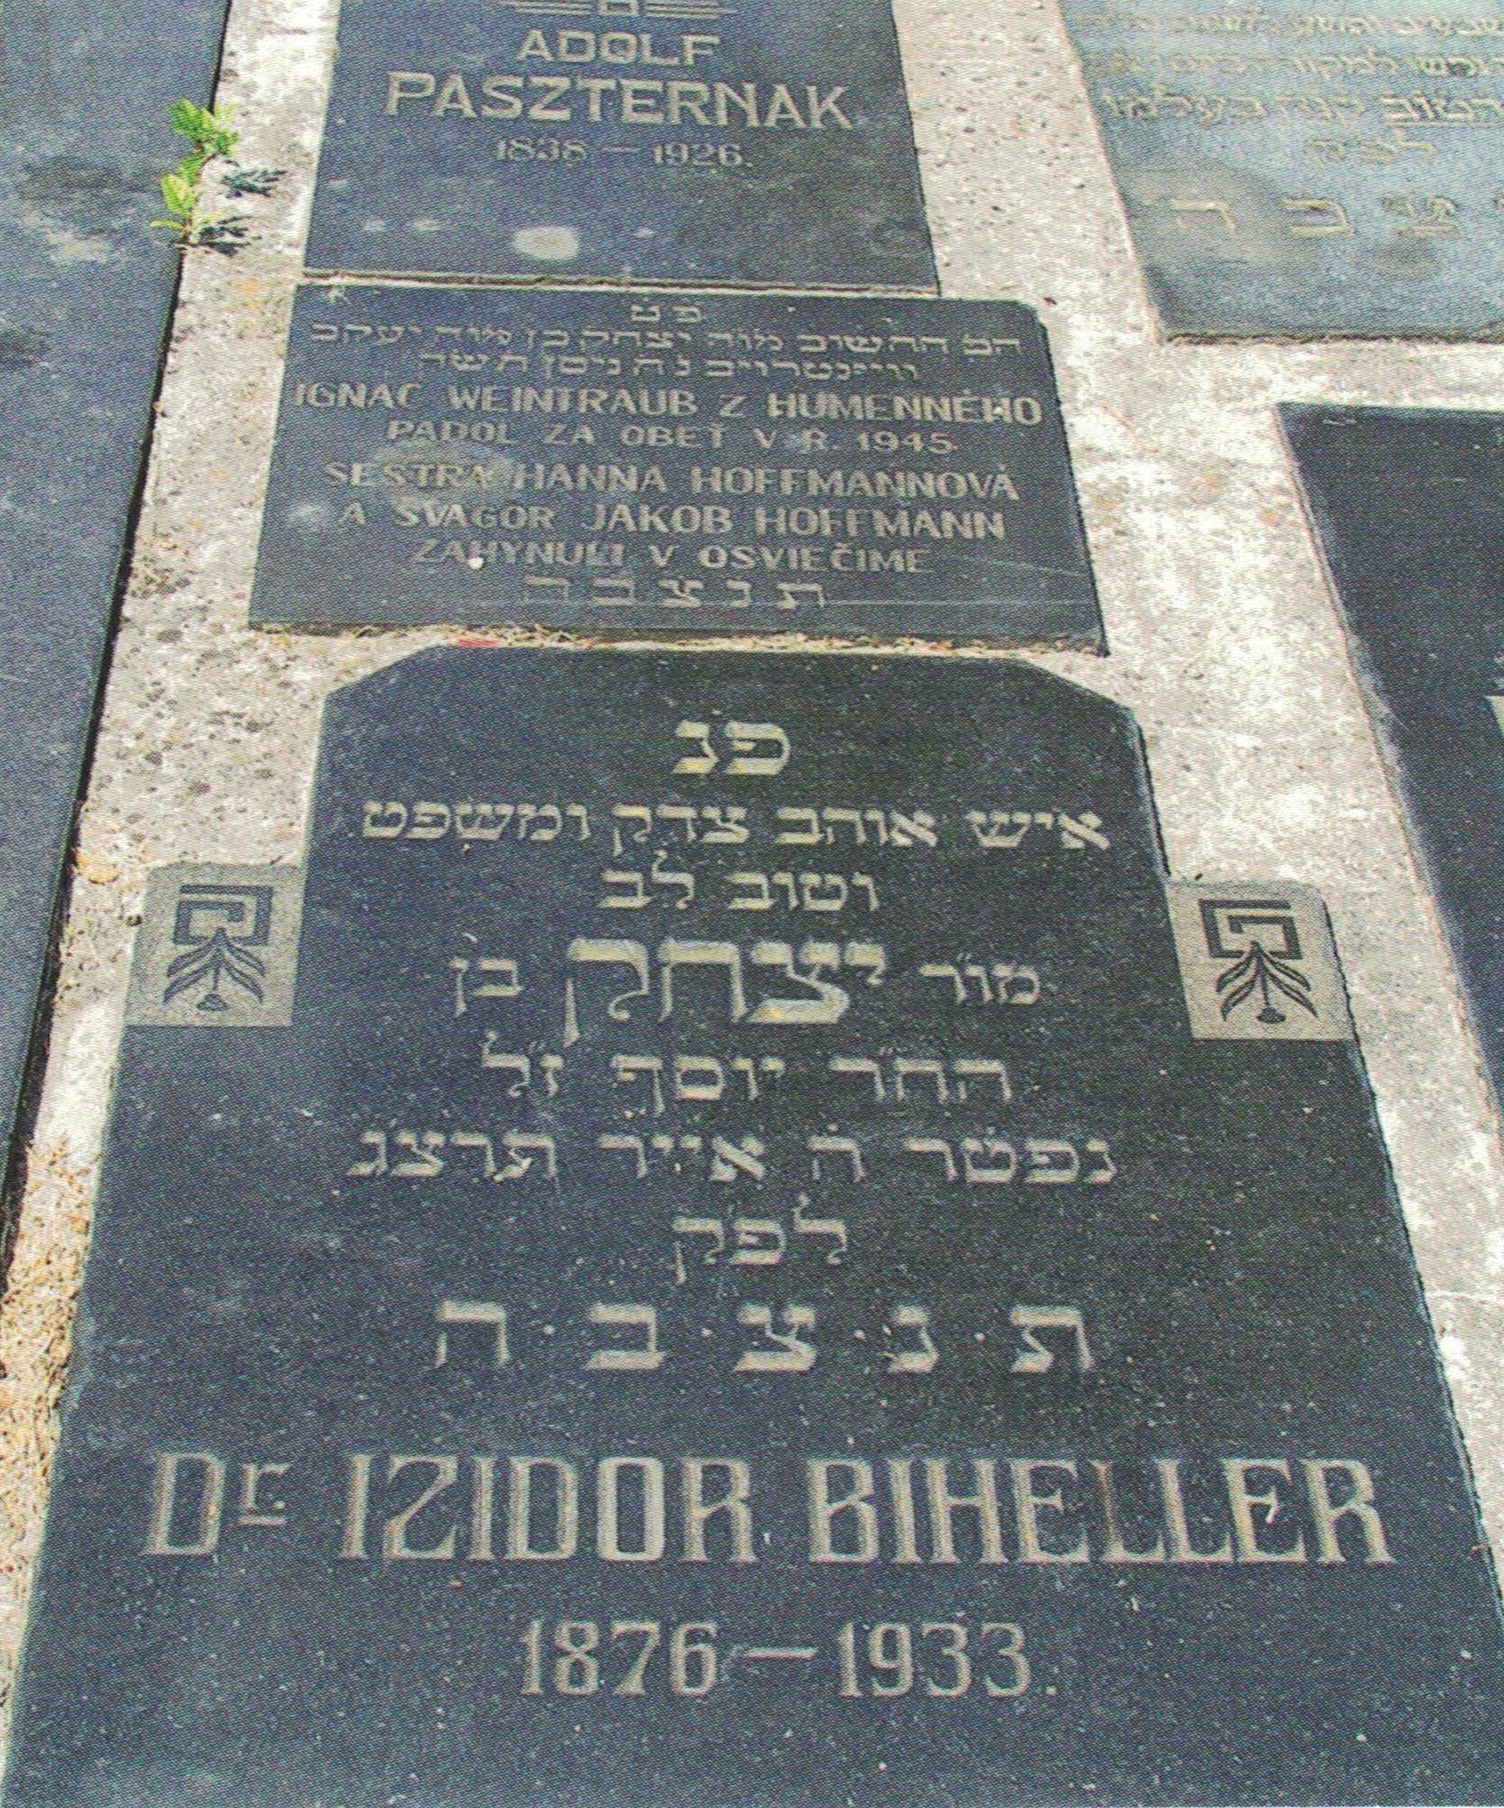 Biheller Izidor - náhrobok